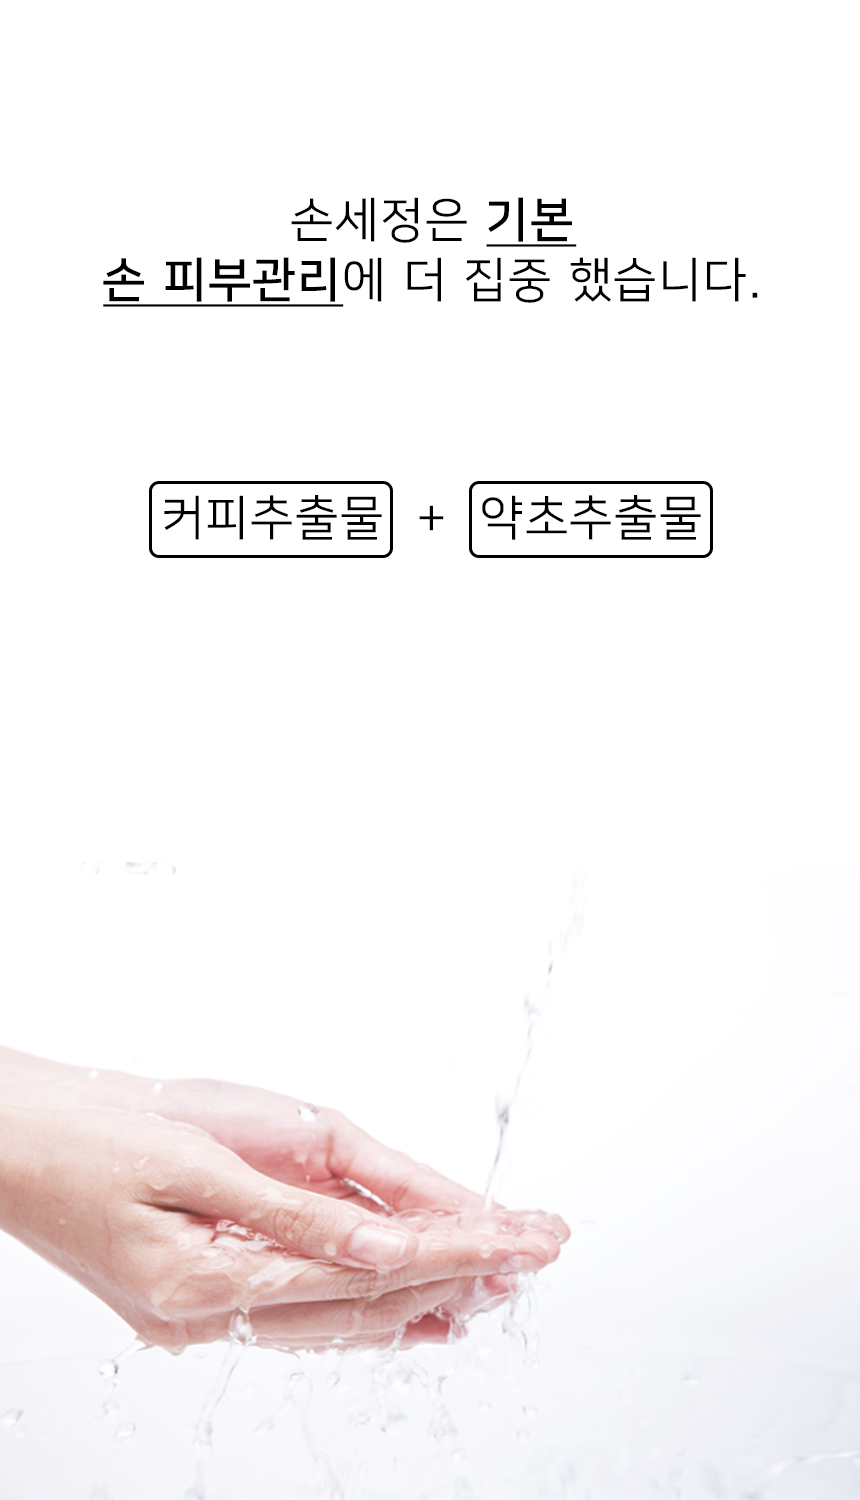 韓國Pilling Bean咖啡喳喳濃密泡泡洗手液 150g+500g